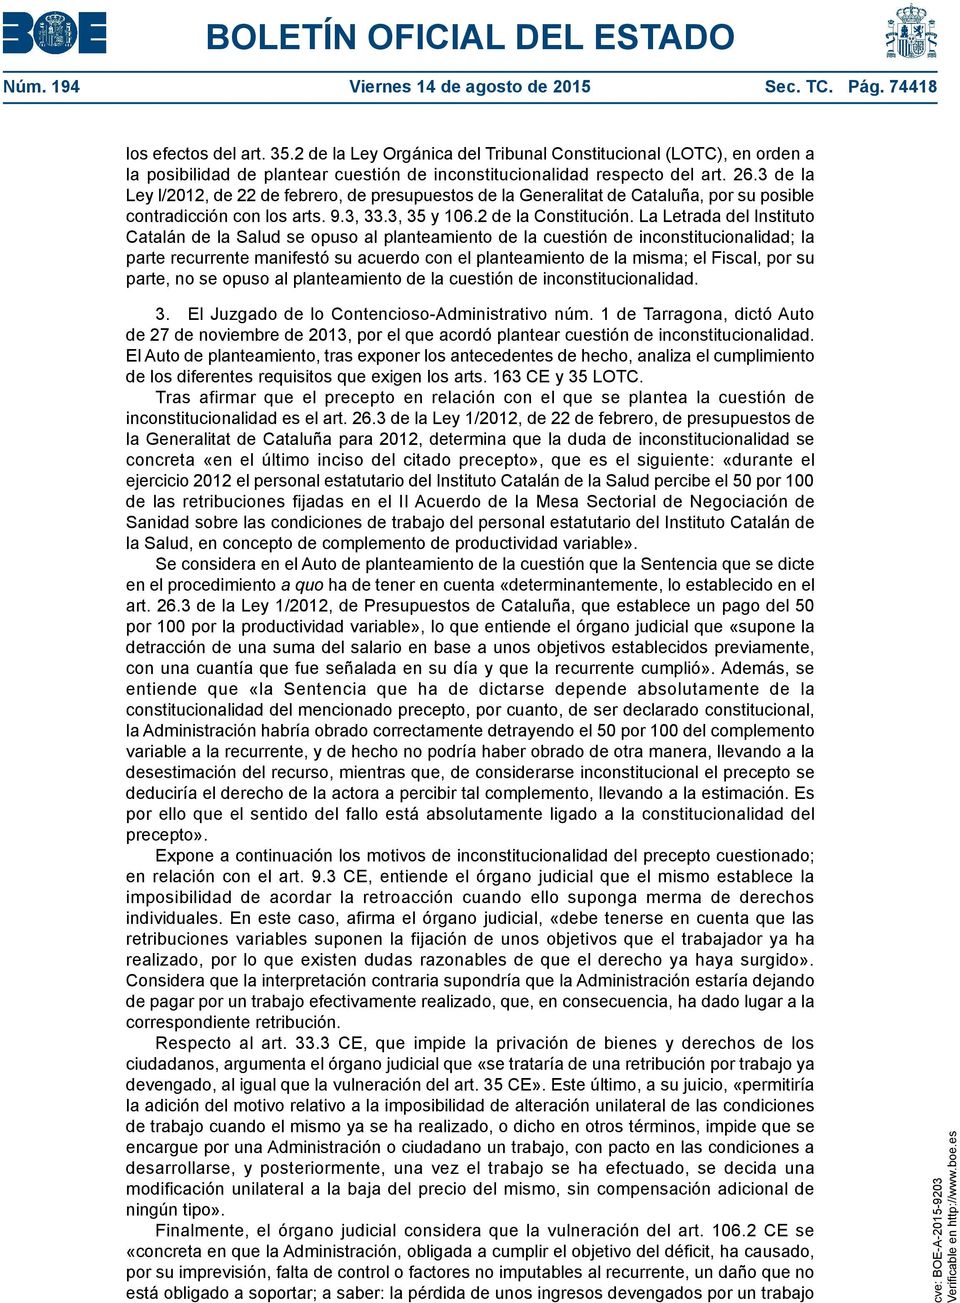 3 de la Ley l/2012, de 22 de febrero, de presupuestos de la Generalitat de Cataluña, por su posible contradicción con los arts. 9.3, 33.3, 35 y 106.2 de la Constitución.